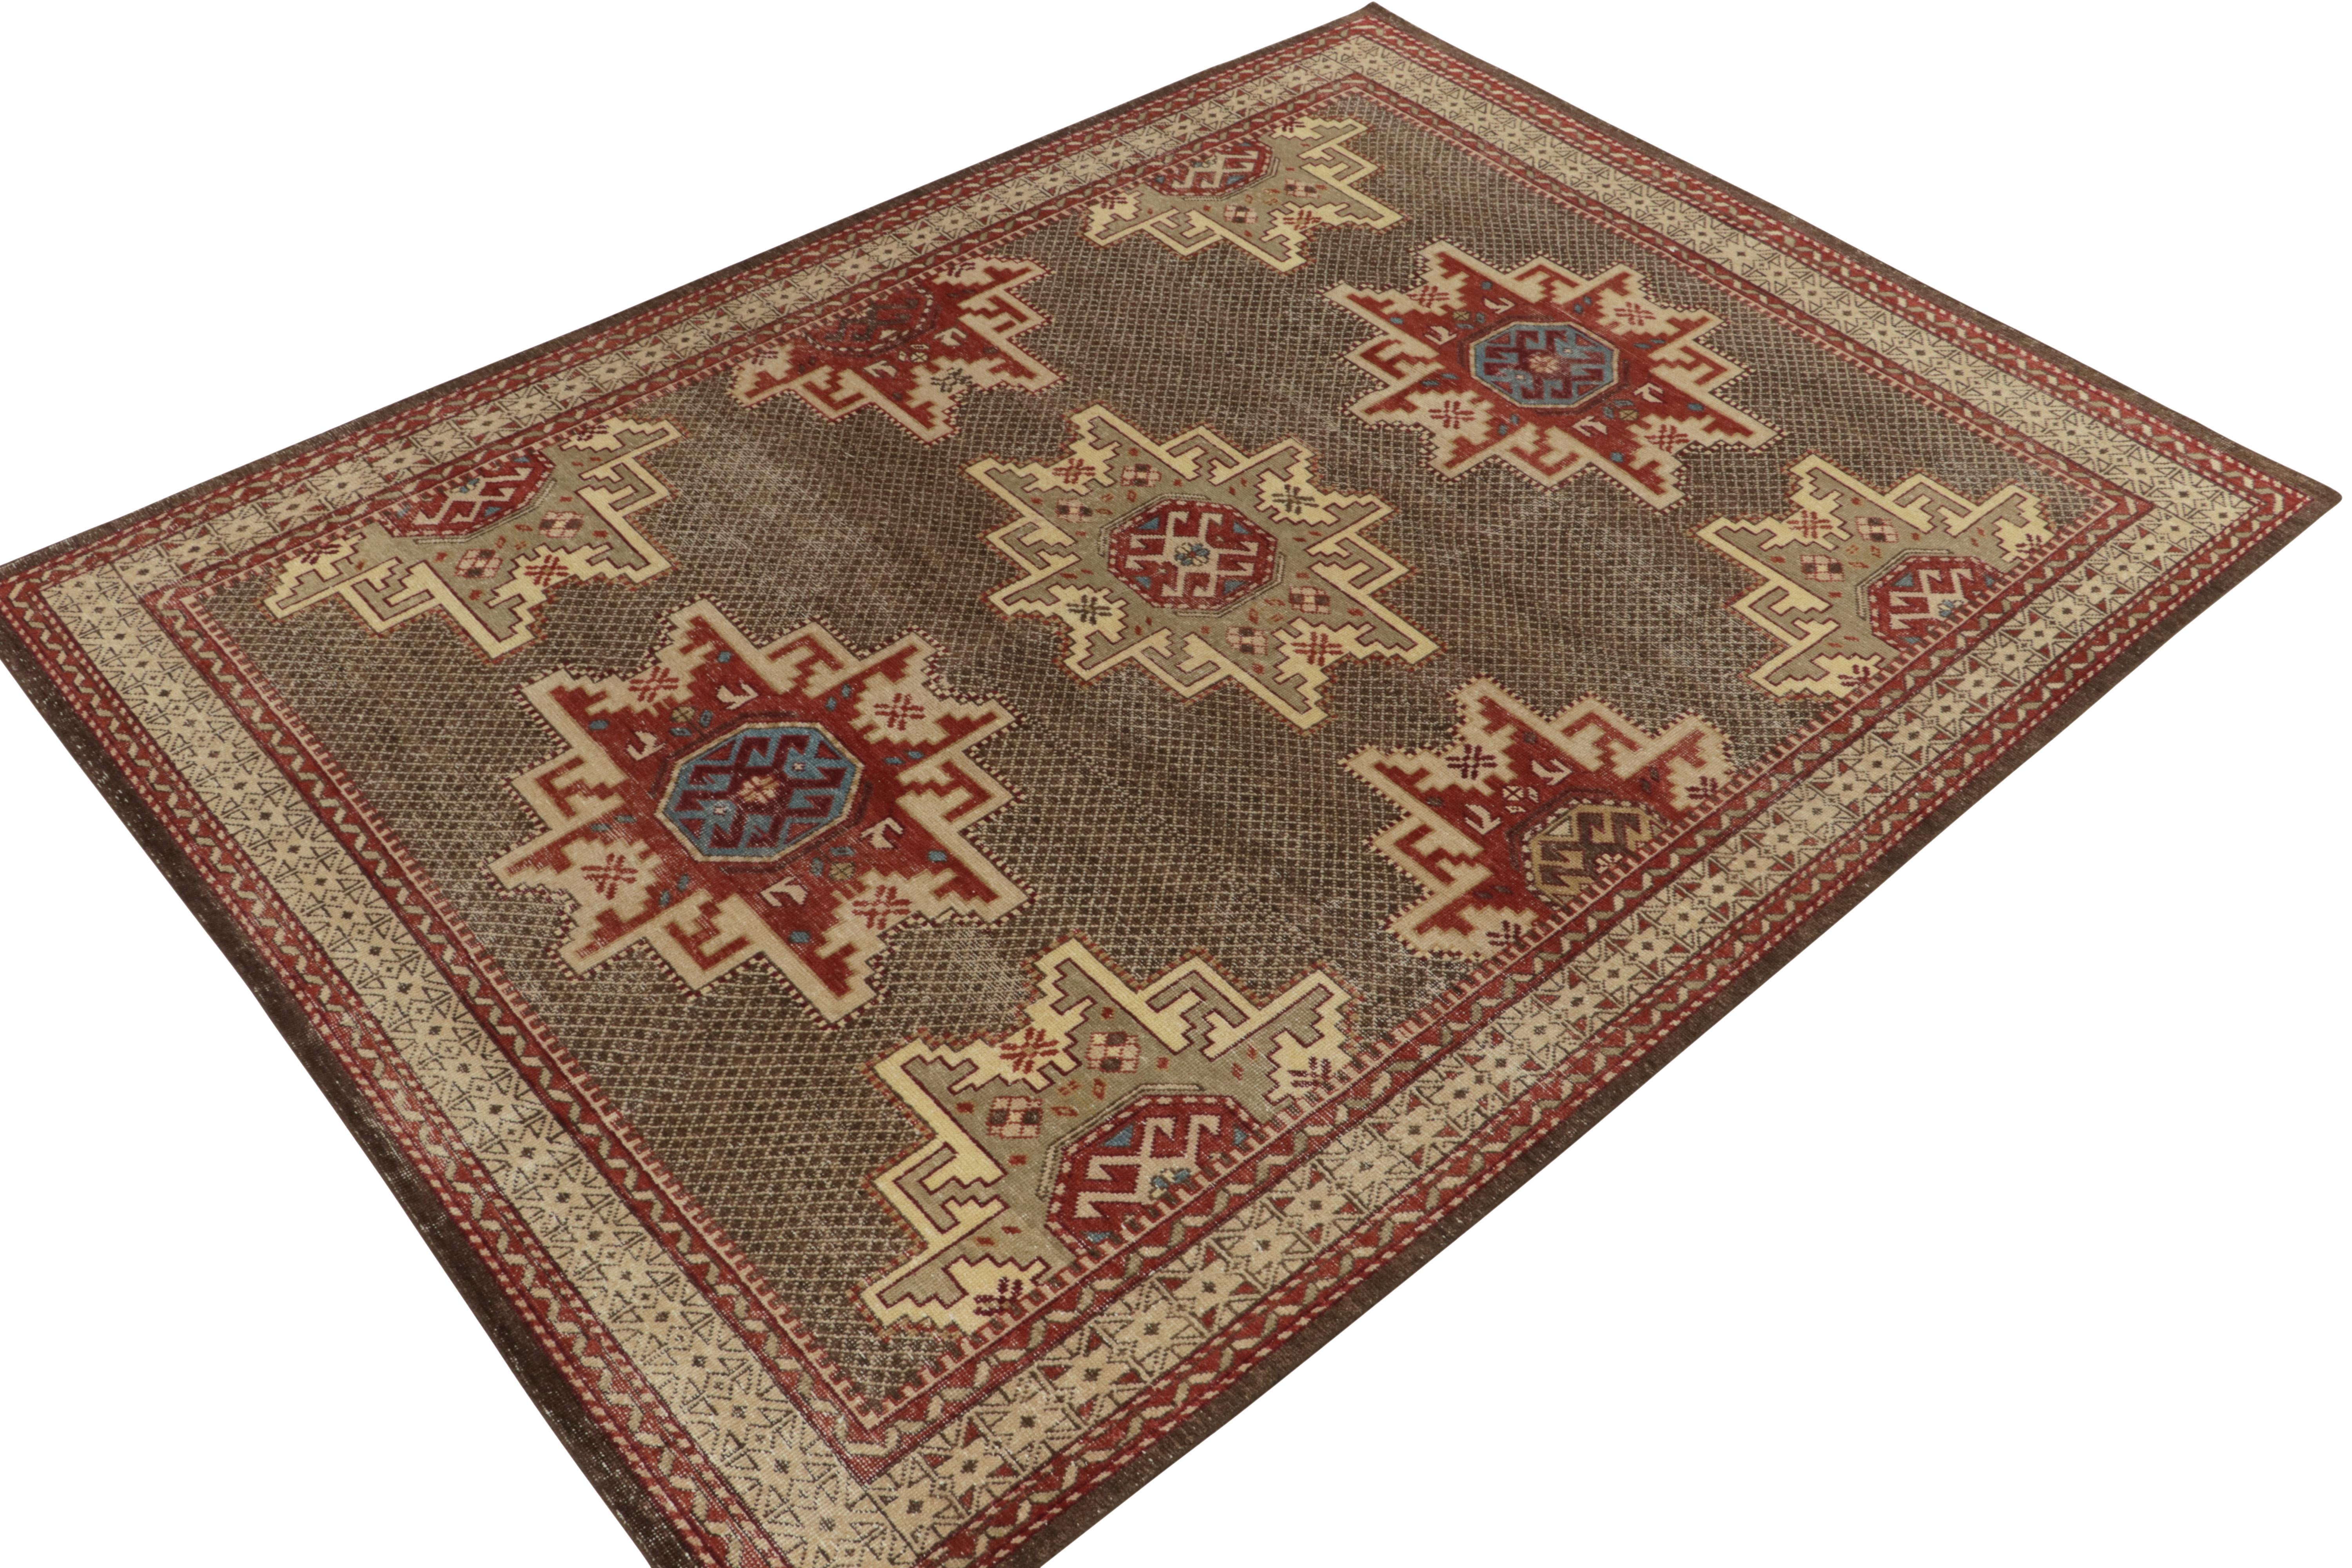 Issu de la collection Homage de Rug & Kilim, ce tapis tribal 9x12 au style vieilli s'inspire du célèbre style Kuba du Caucase. Noué à la main en laine, ce modèle rustique prône la tradition avec des motifs tribaux englobant le motif étoilé connoté